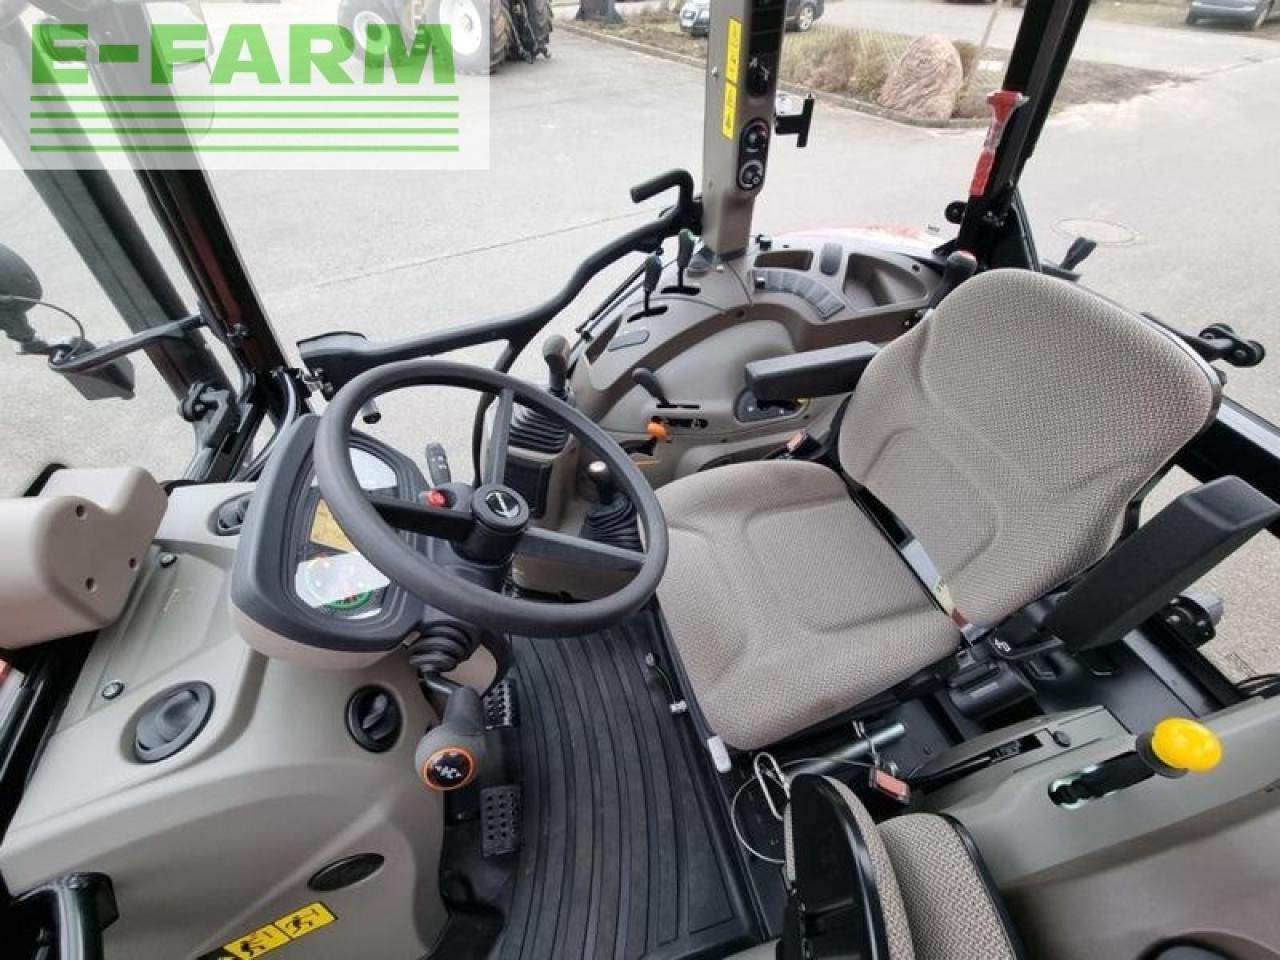 Case-IH farmall 75 c - Farm tractor: picture 3